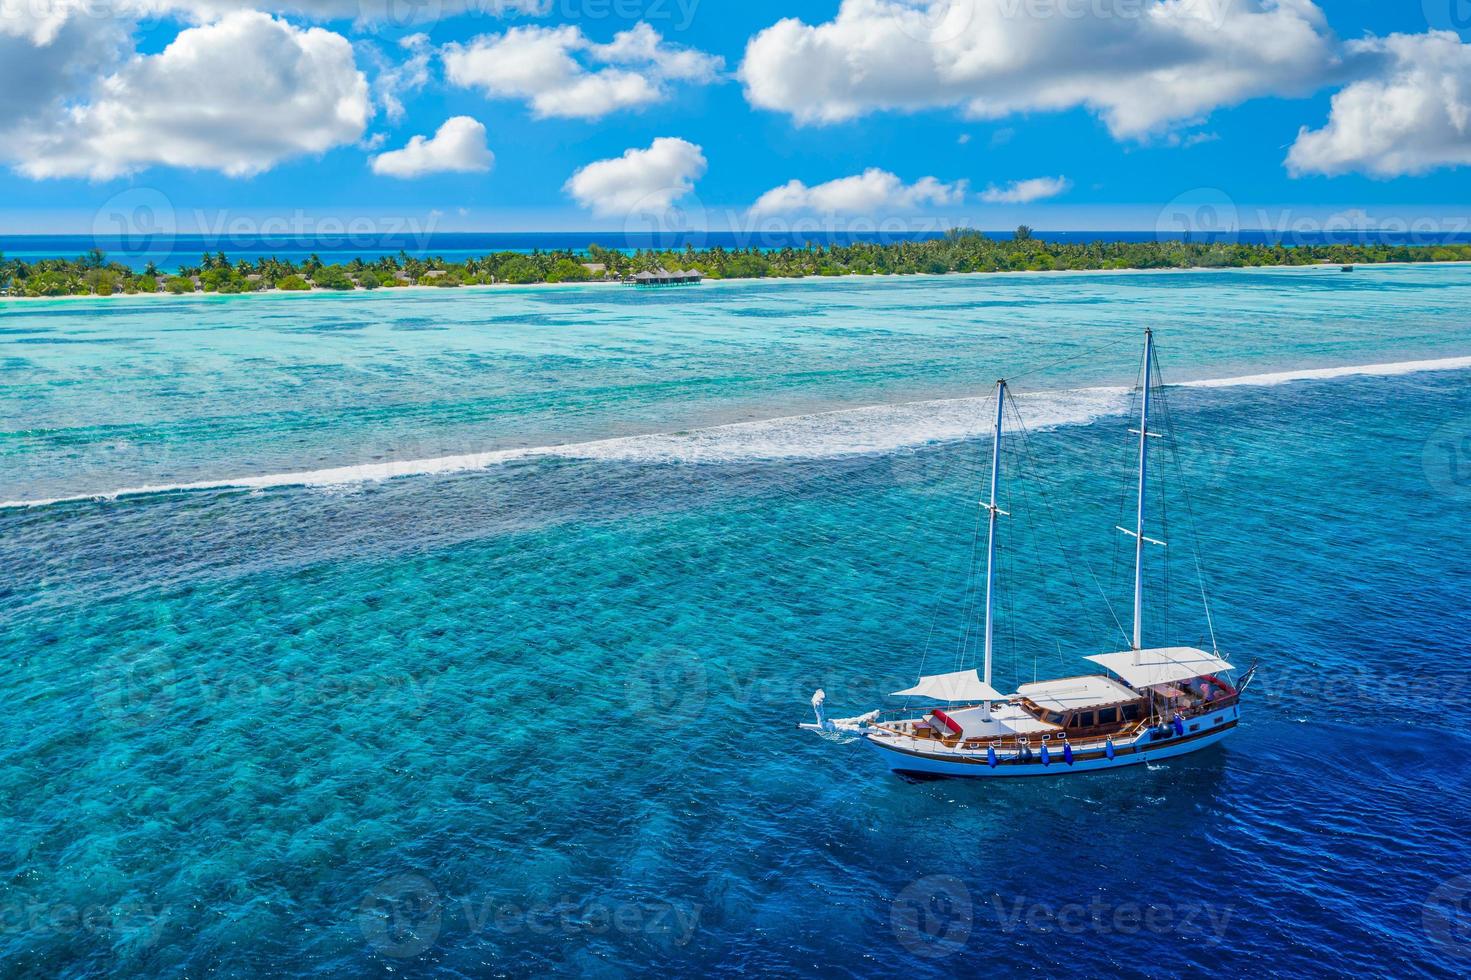 lindo veleiro de água do oceano turquesa, veja a paisagem aérea do drone. ondas do mar tropical, incrível recife de coral aéreo, lagoa. atividade recreativa ao ar livre de pessoas, natação, mergulho, turismo de mergulho foto